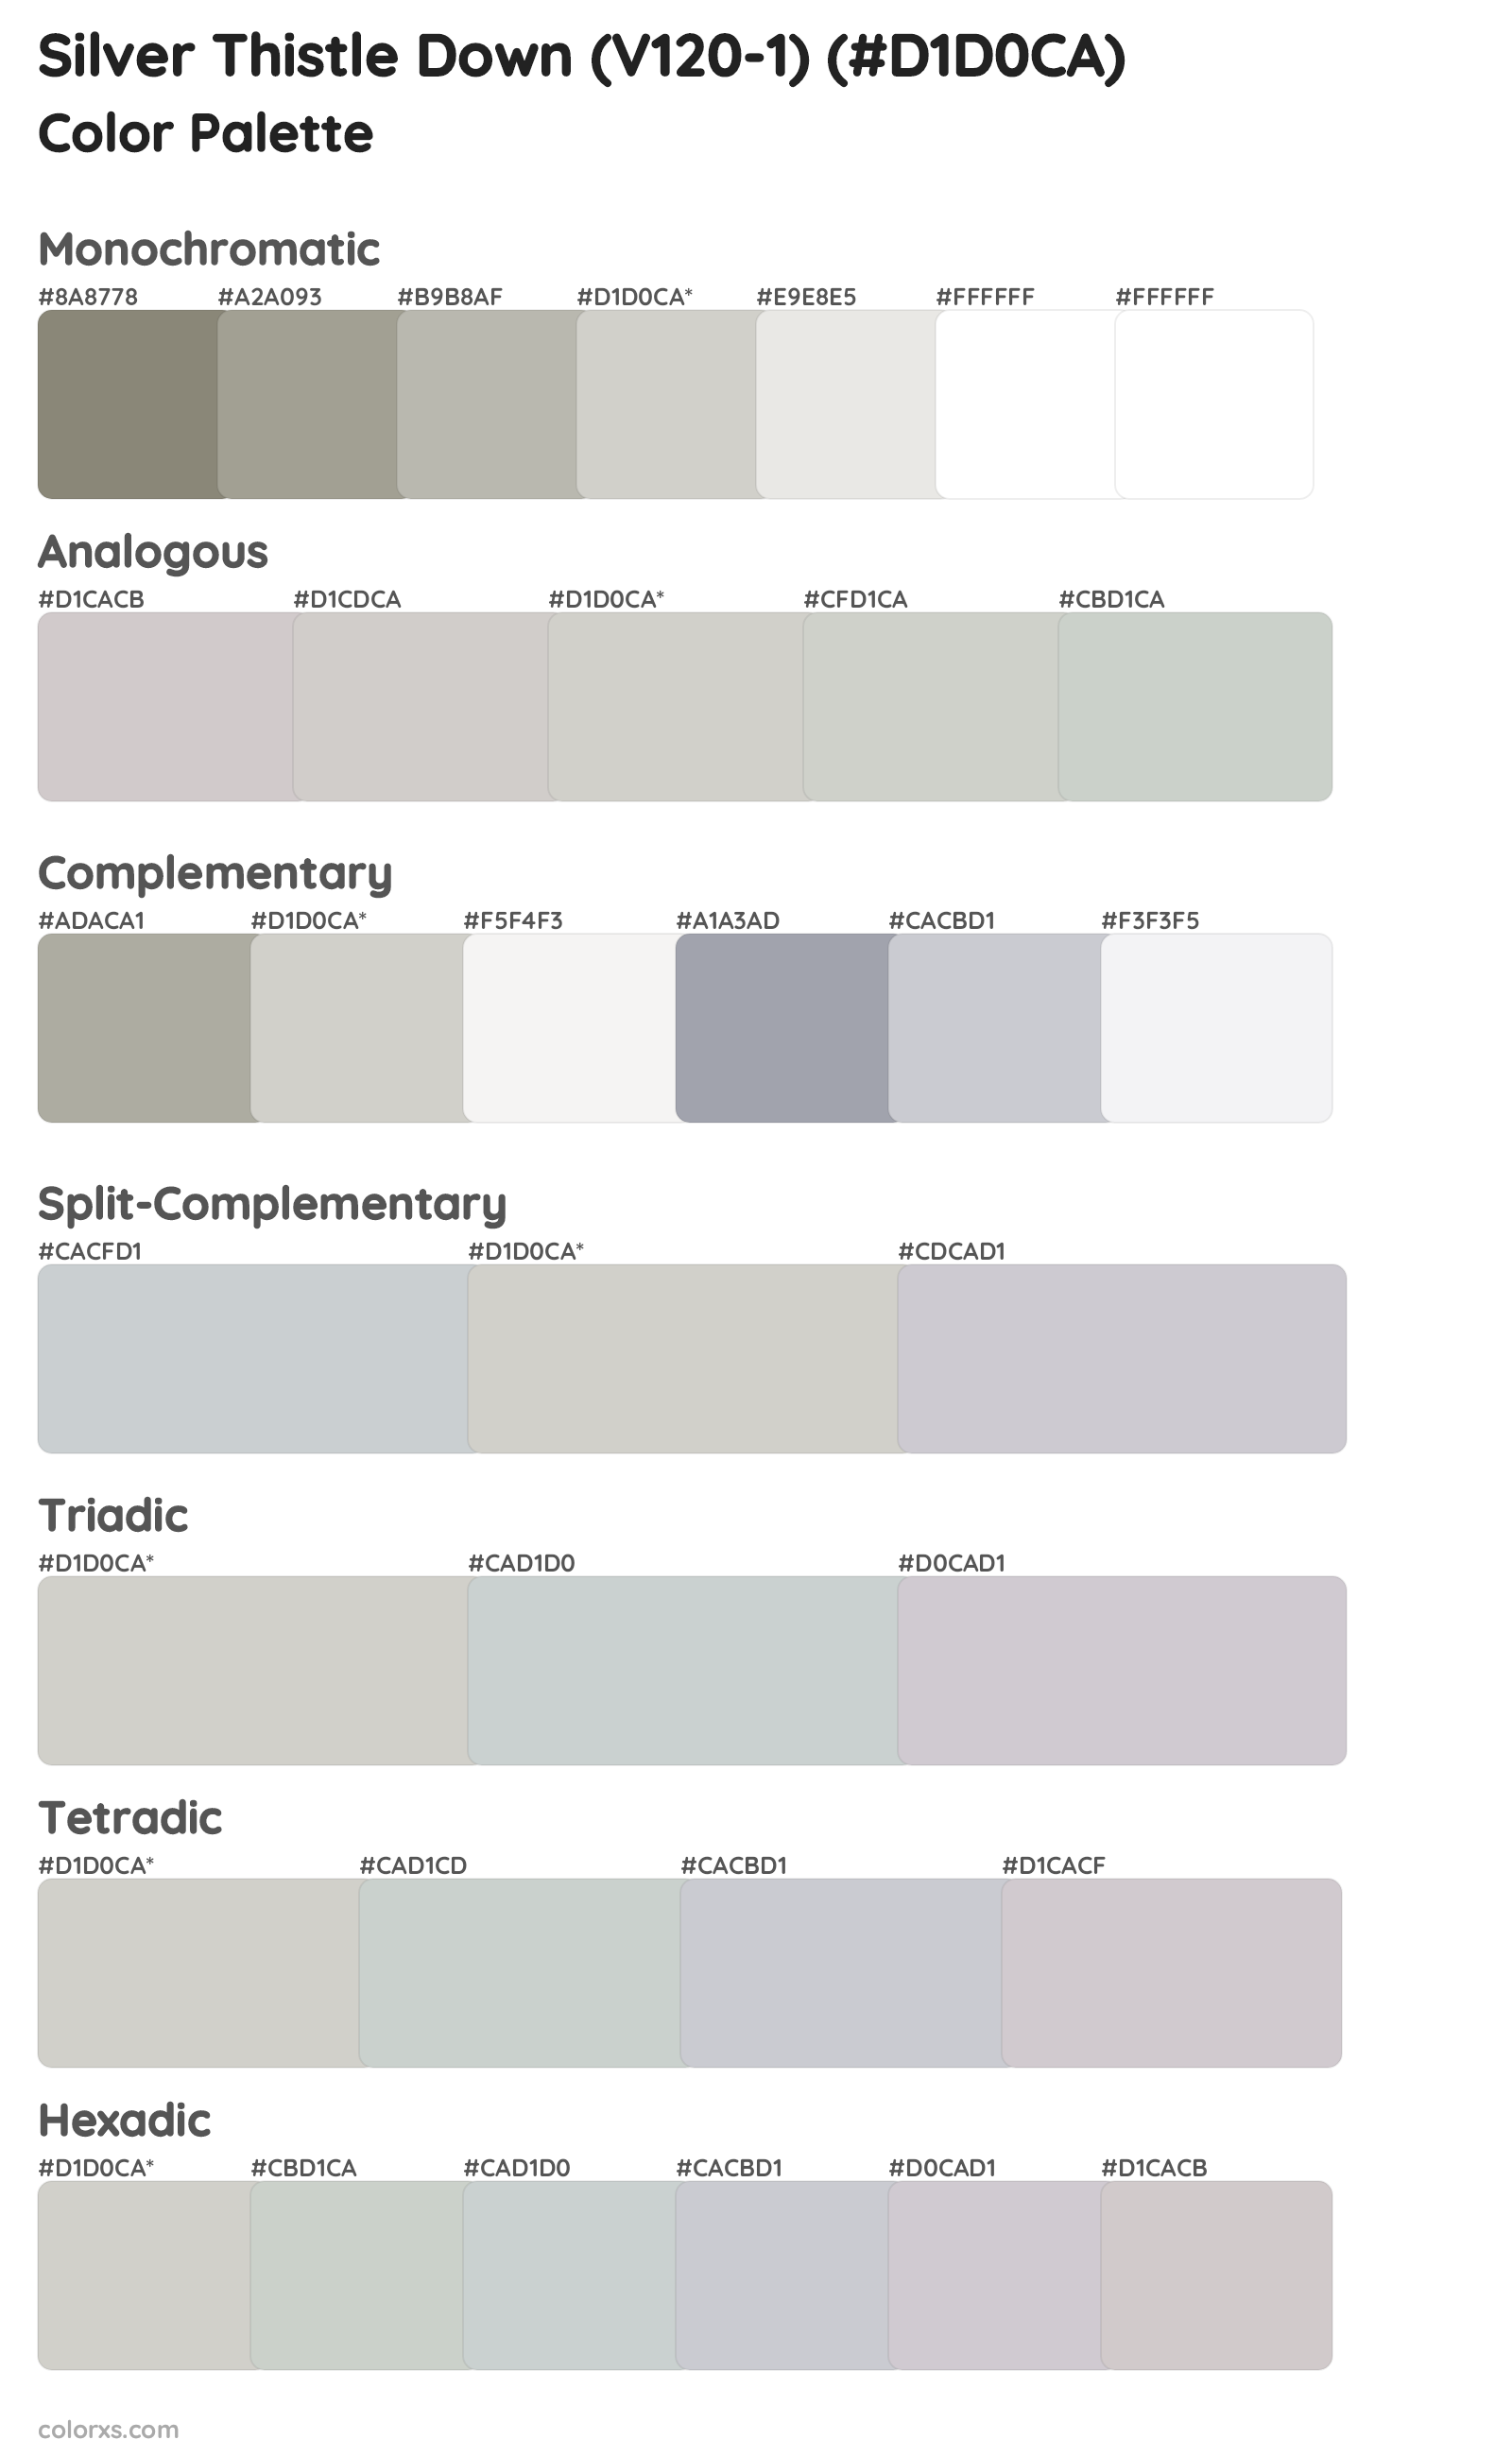 Silver Thistle Down (V120-1) Color Scheme Palettes